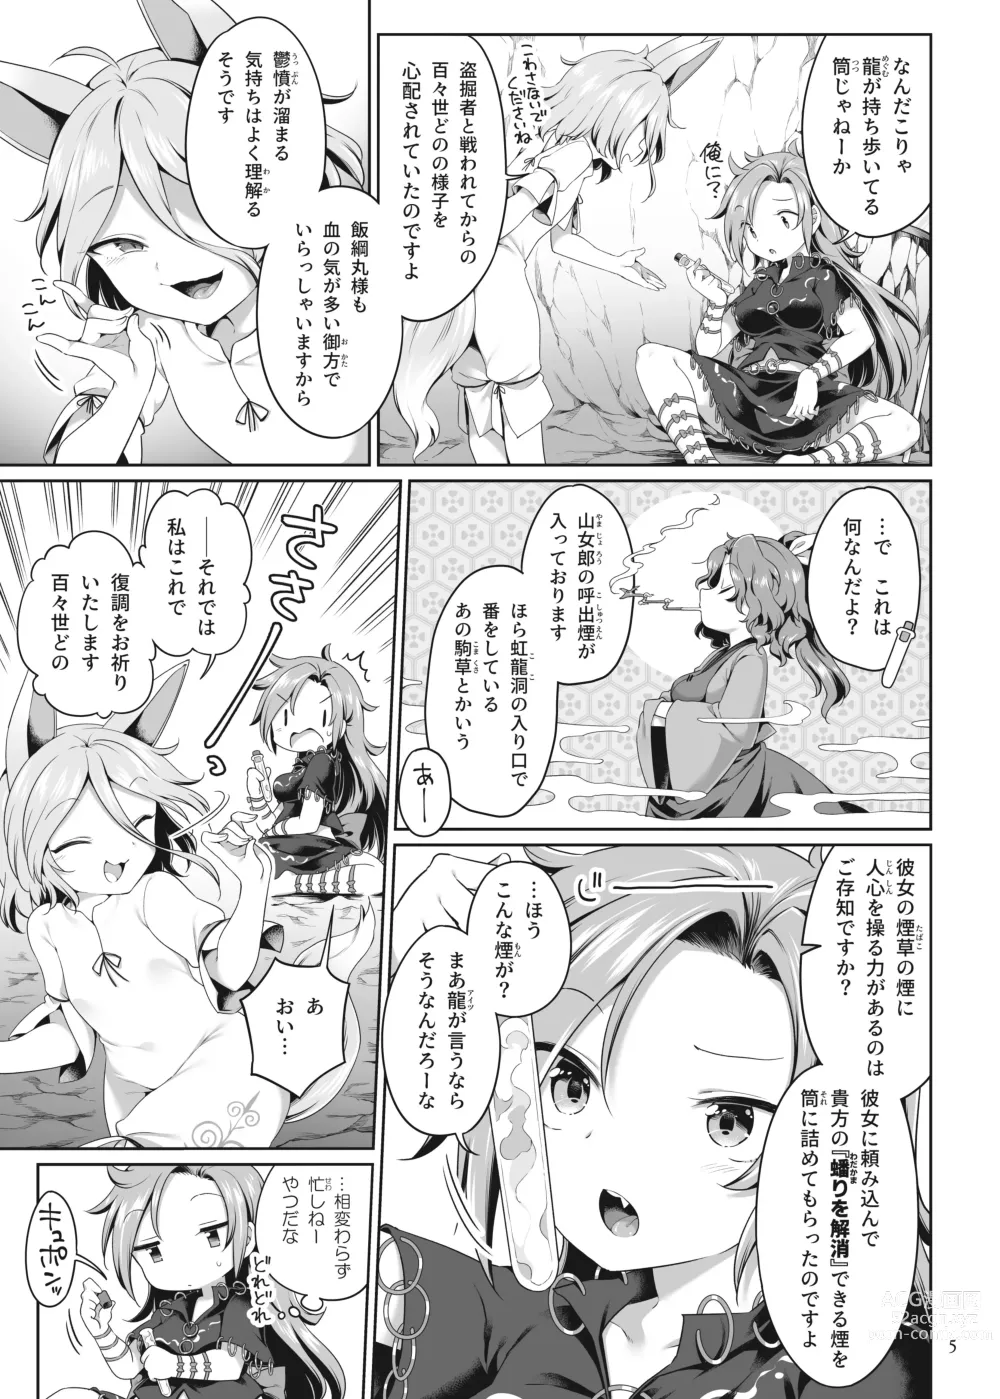 Page 5 of doujinshi Hitori Ona Mukade